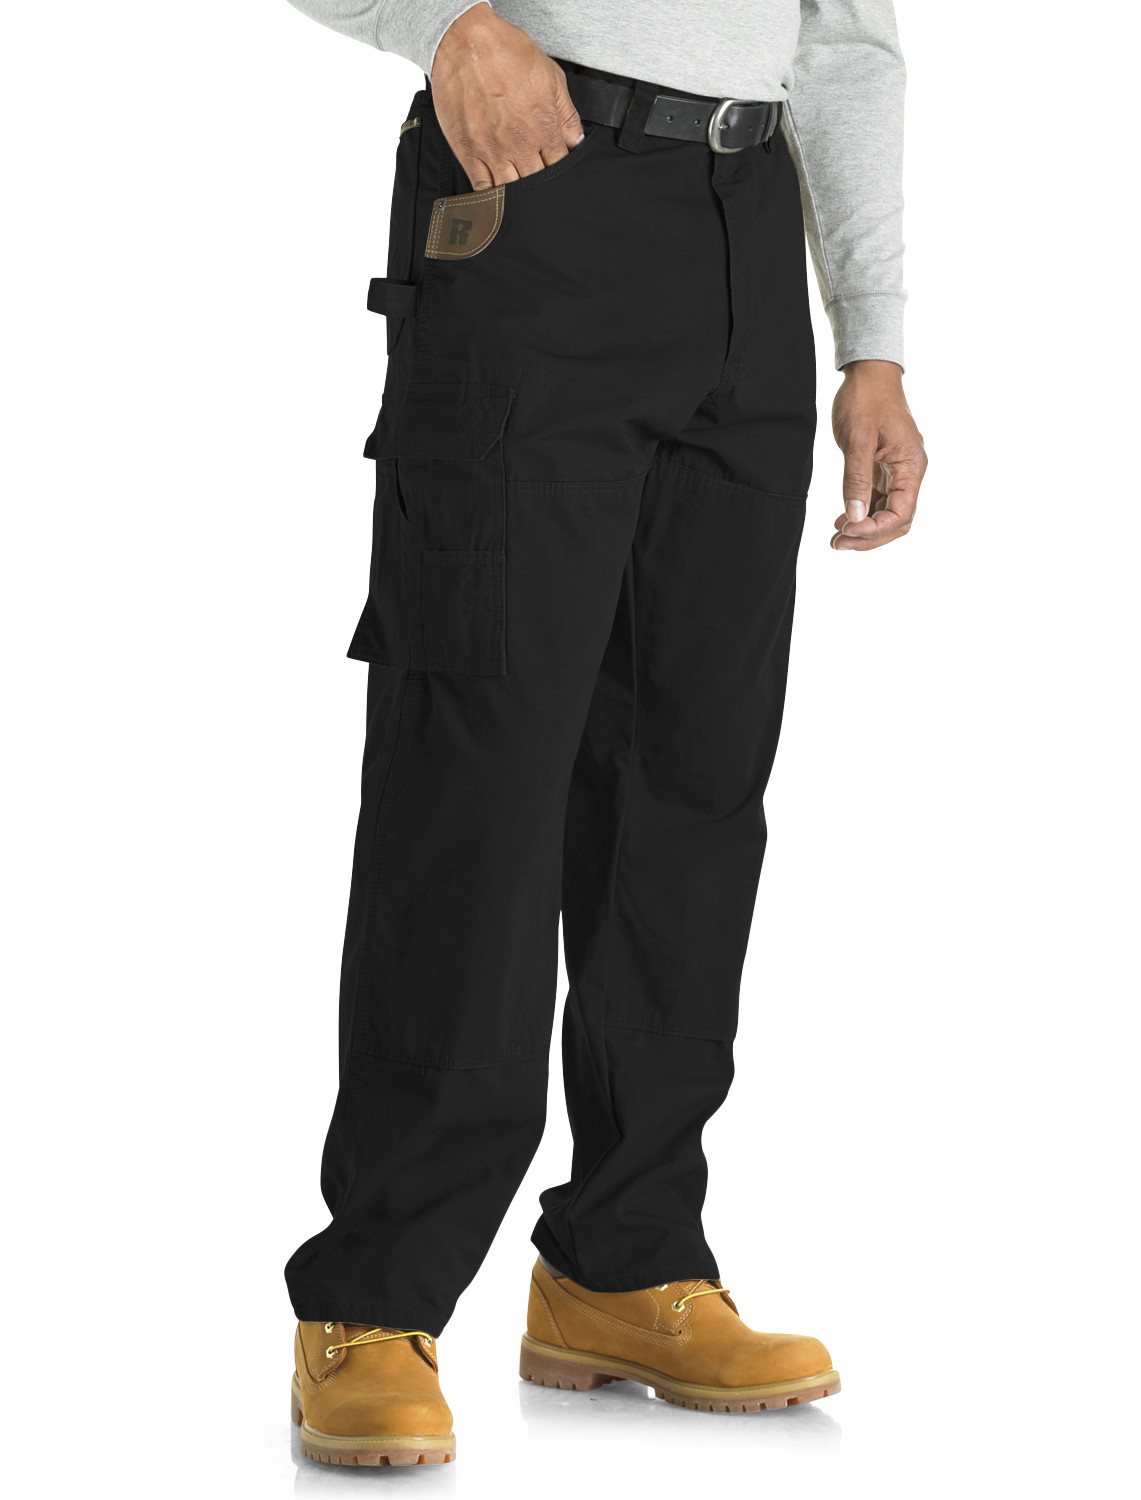 Riggs Workwear Ranger Pants